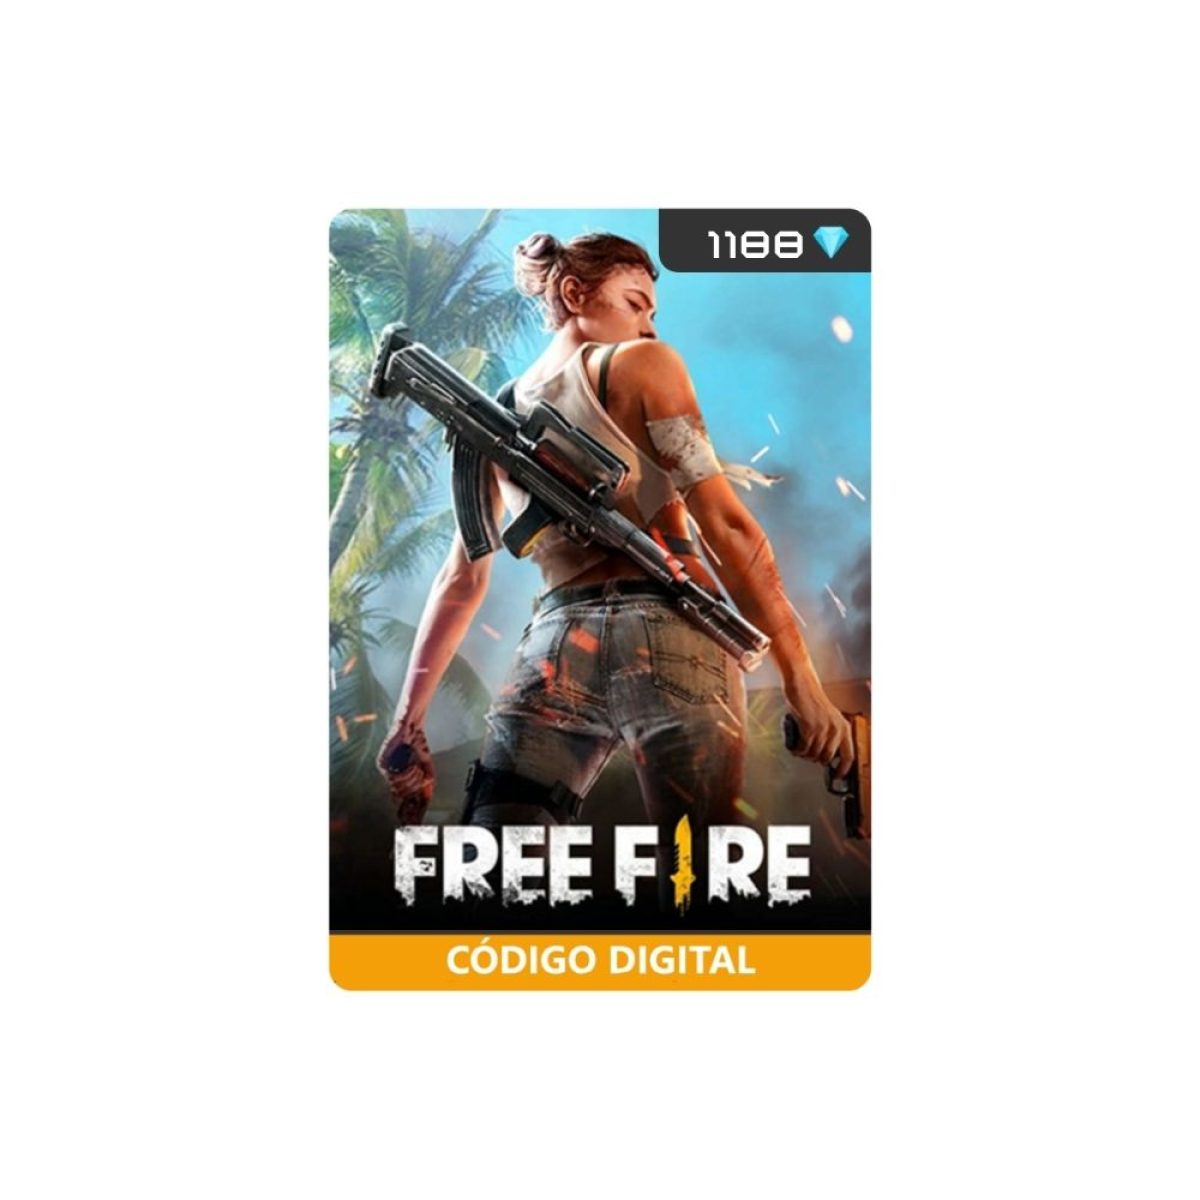 Recarga Free Fire - Gift Cards - DFG